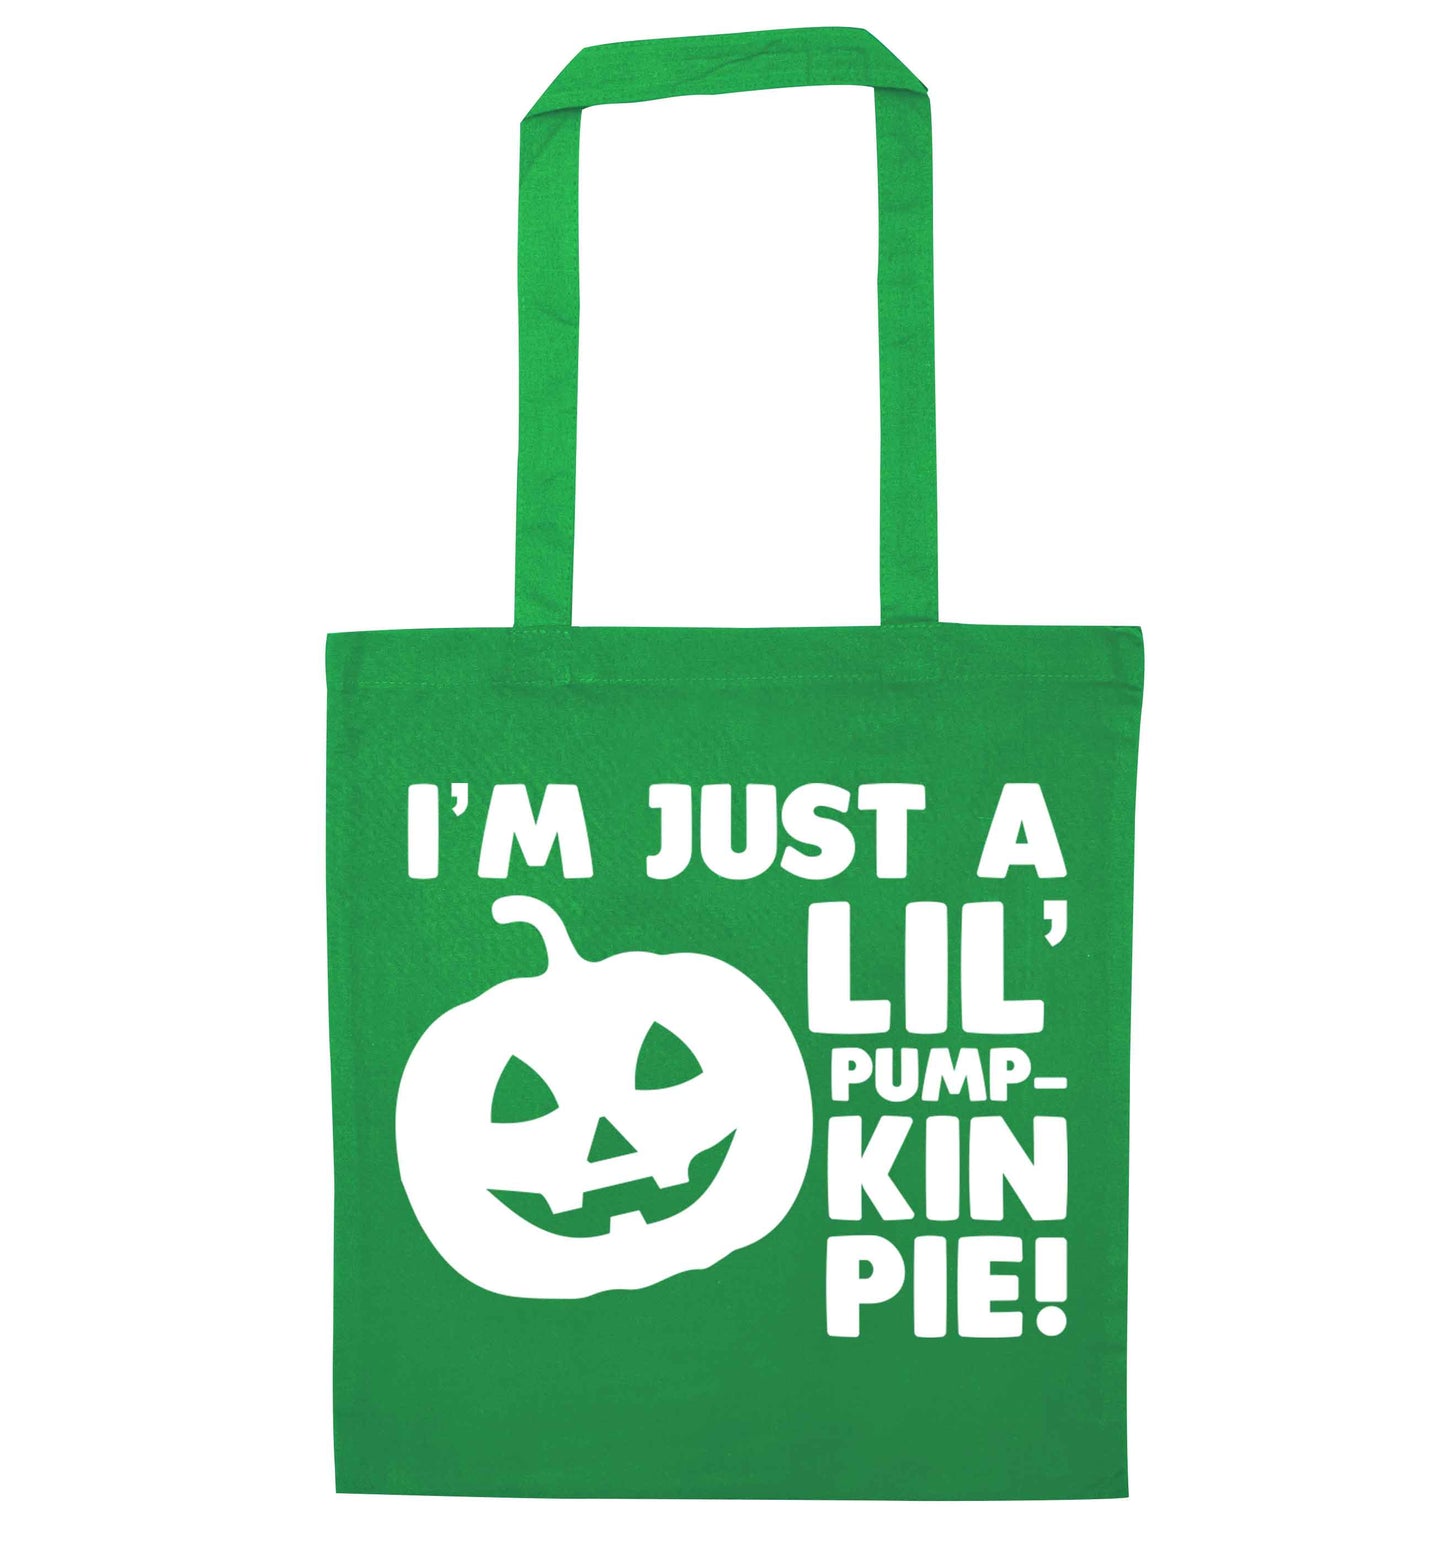 I'm just a lil' pumpkin pie green tote bag